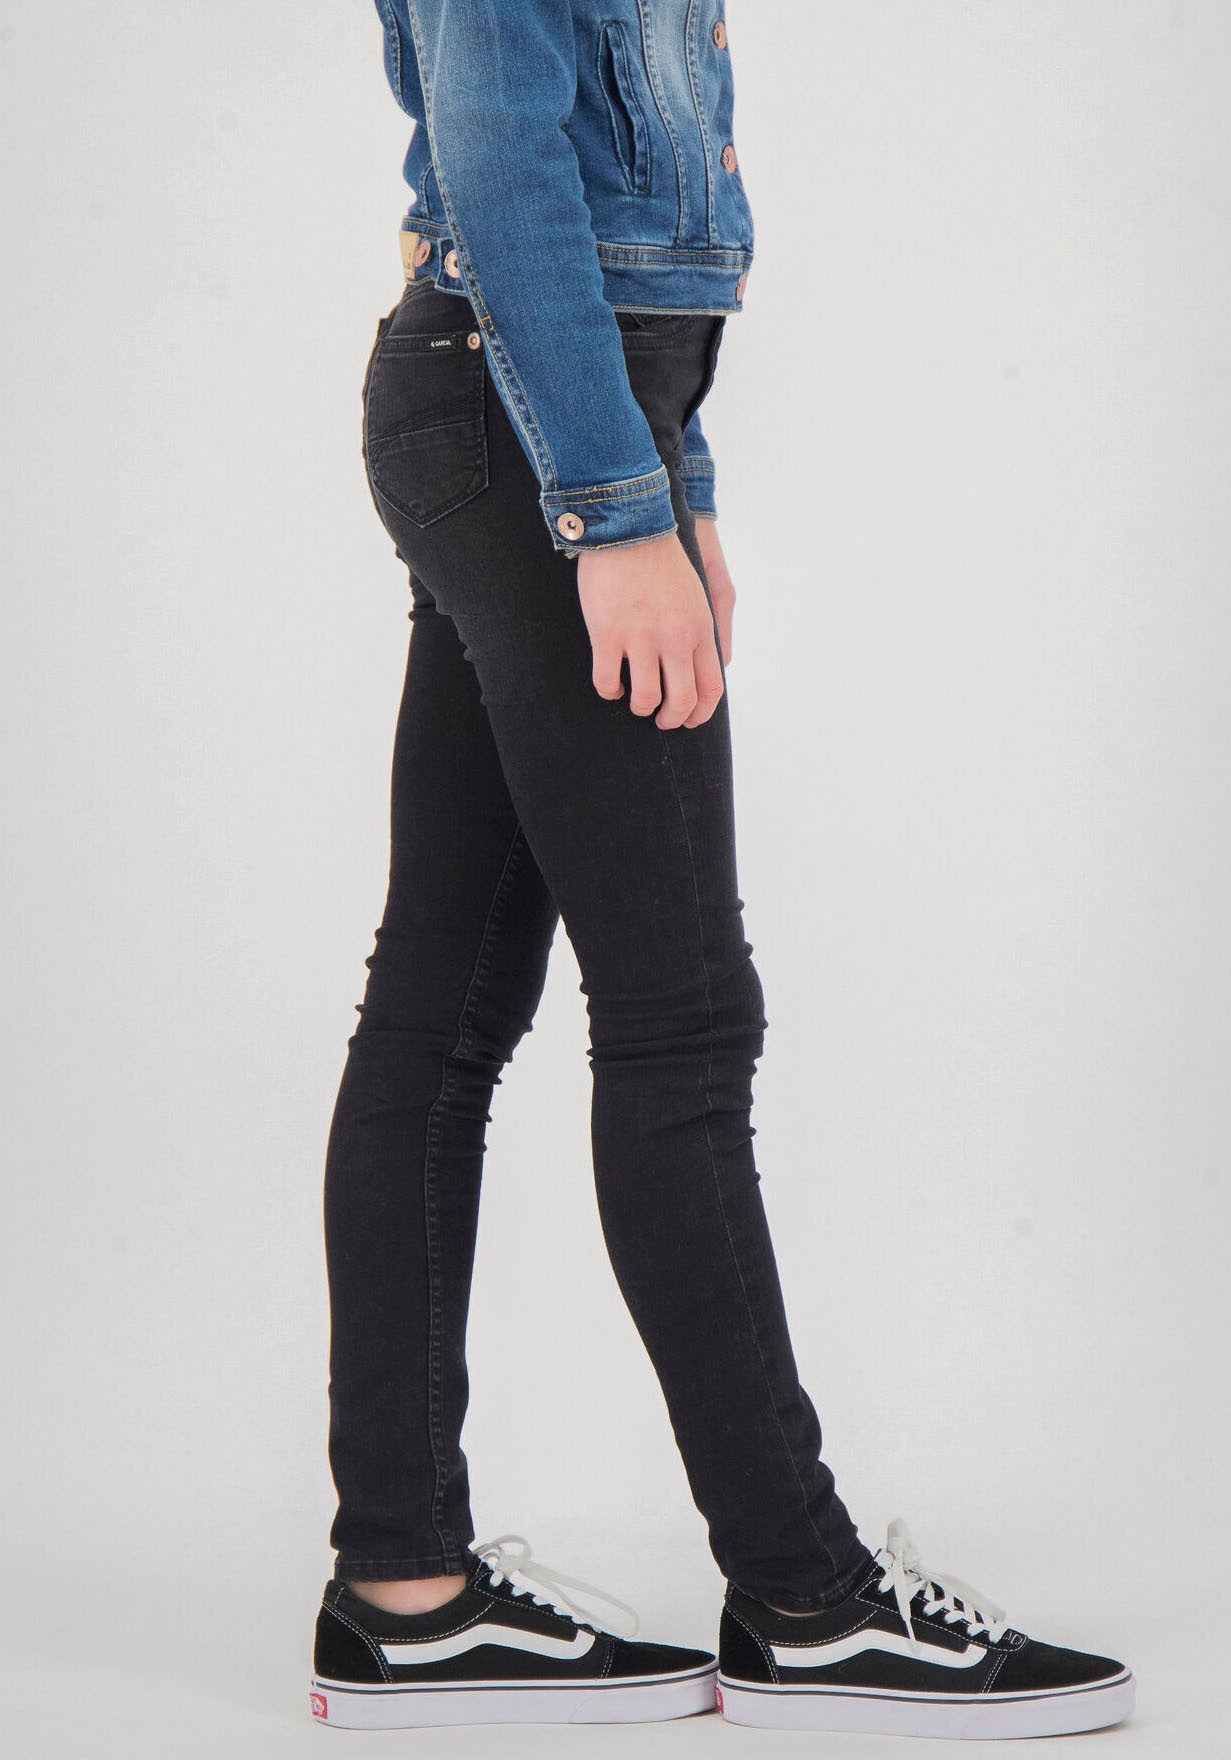 Garcia Stretch-Jeans »570 RIANNA SUPERSLIM« online bei OTTO